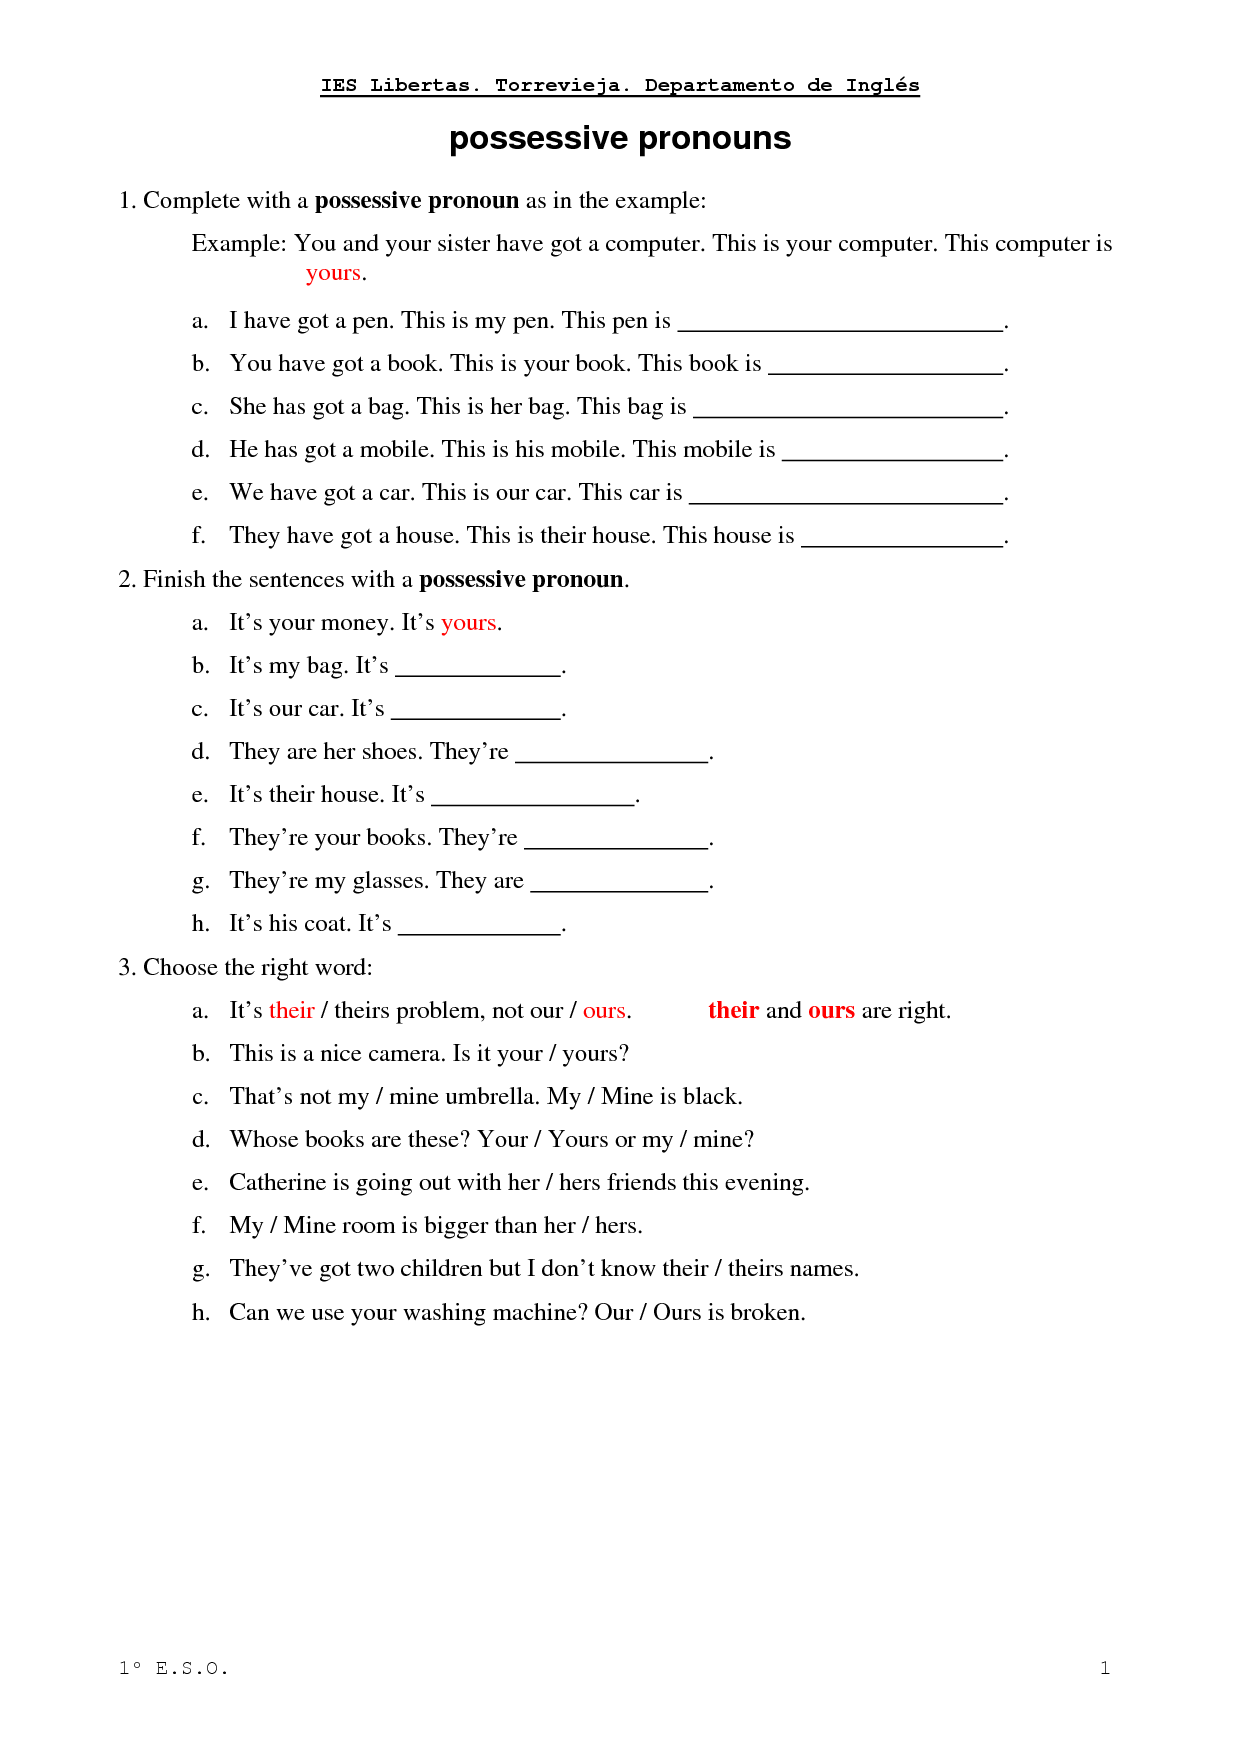 possessive-pronouns-worksheets-for-grade-1-kidpid